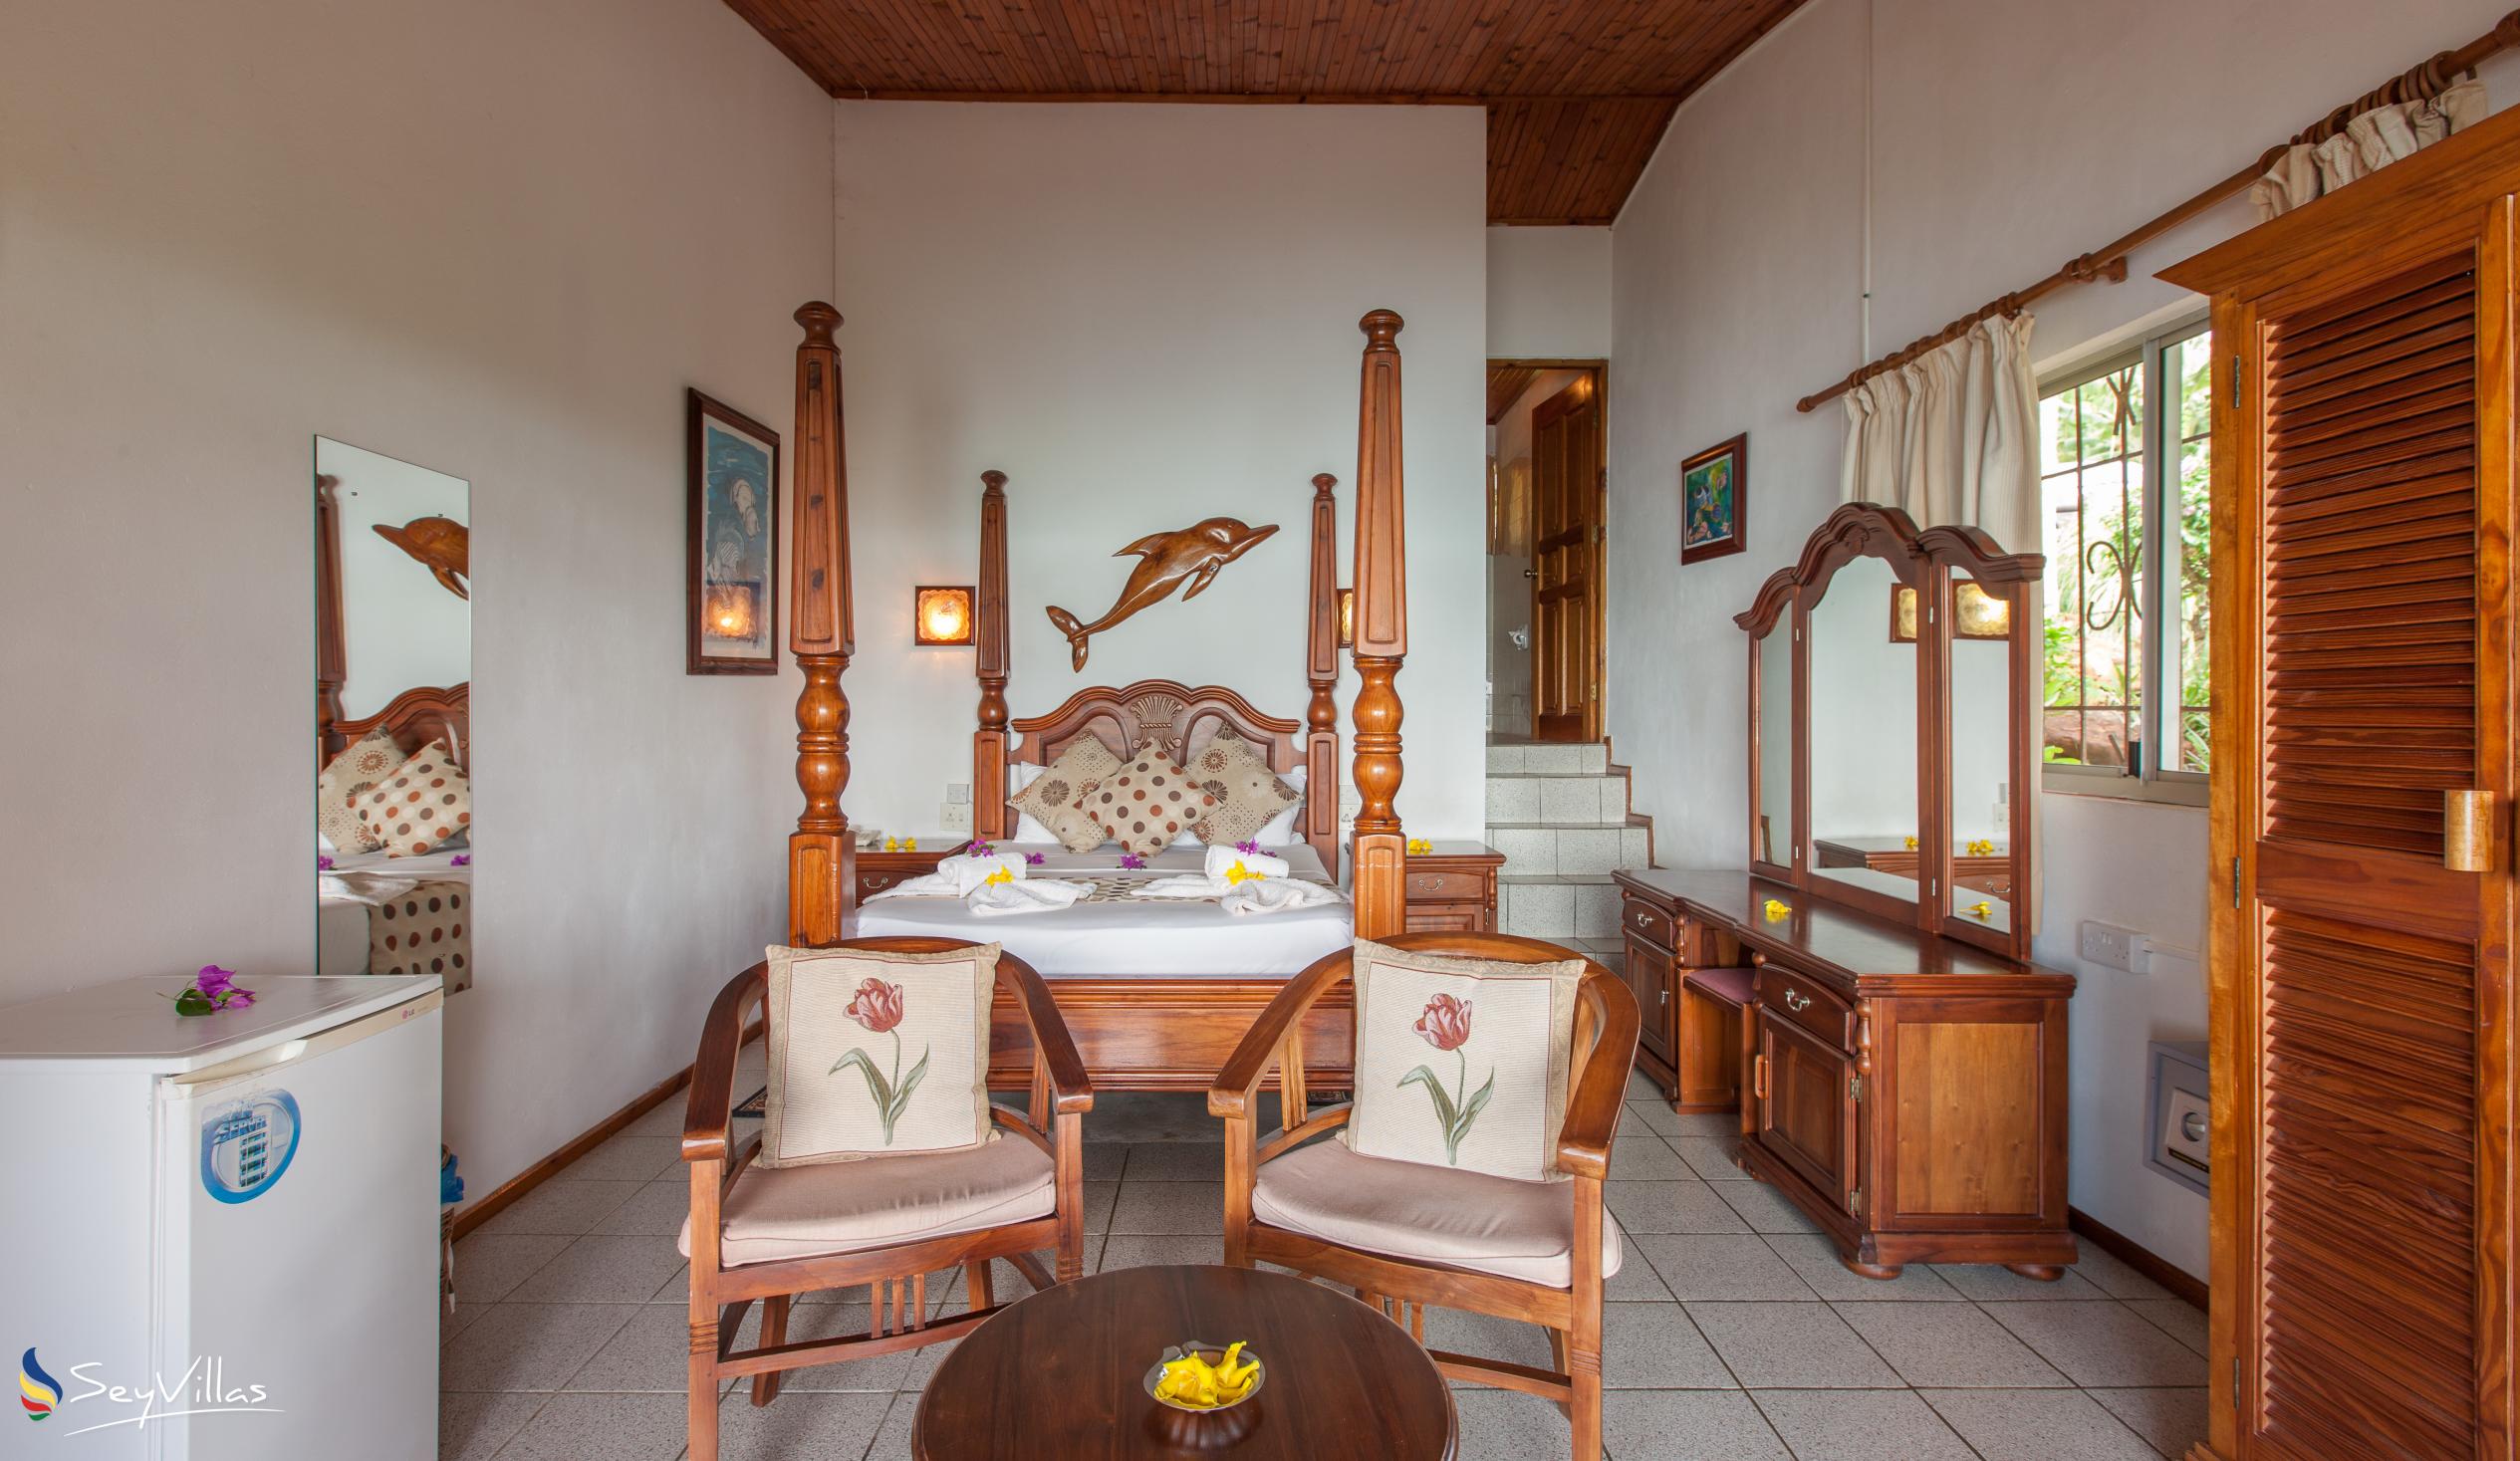 Foto 48: Chalets Cote Mer - Cote Mer Standard Zimmer mit Meerblick - Praslin (Seychellen)